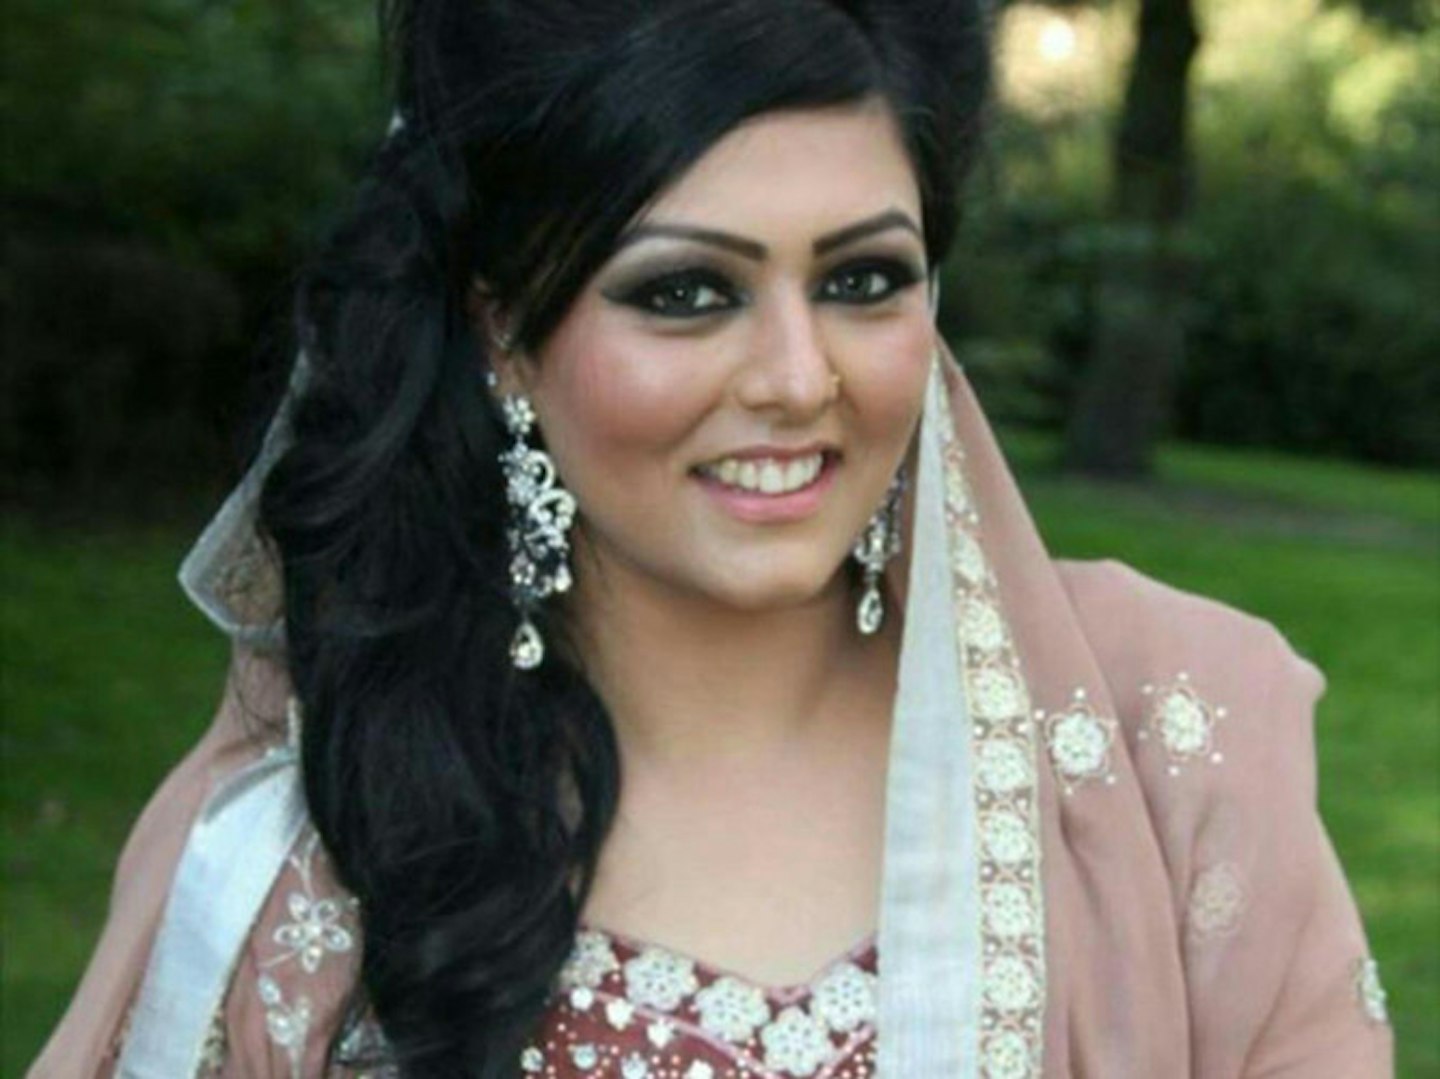 Samia Shahid